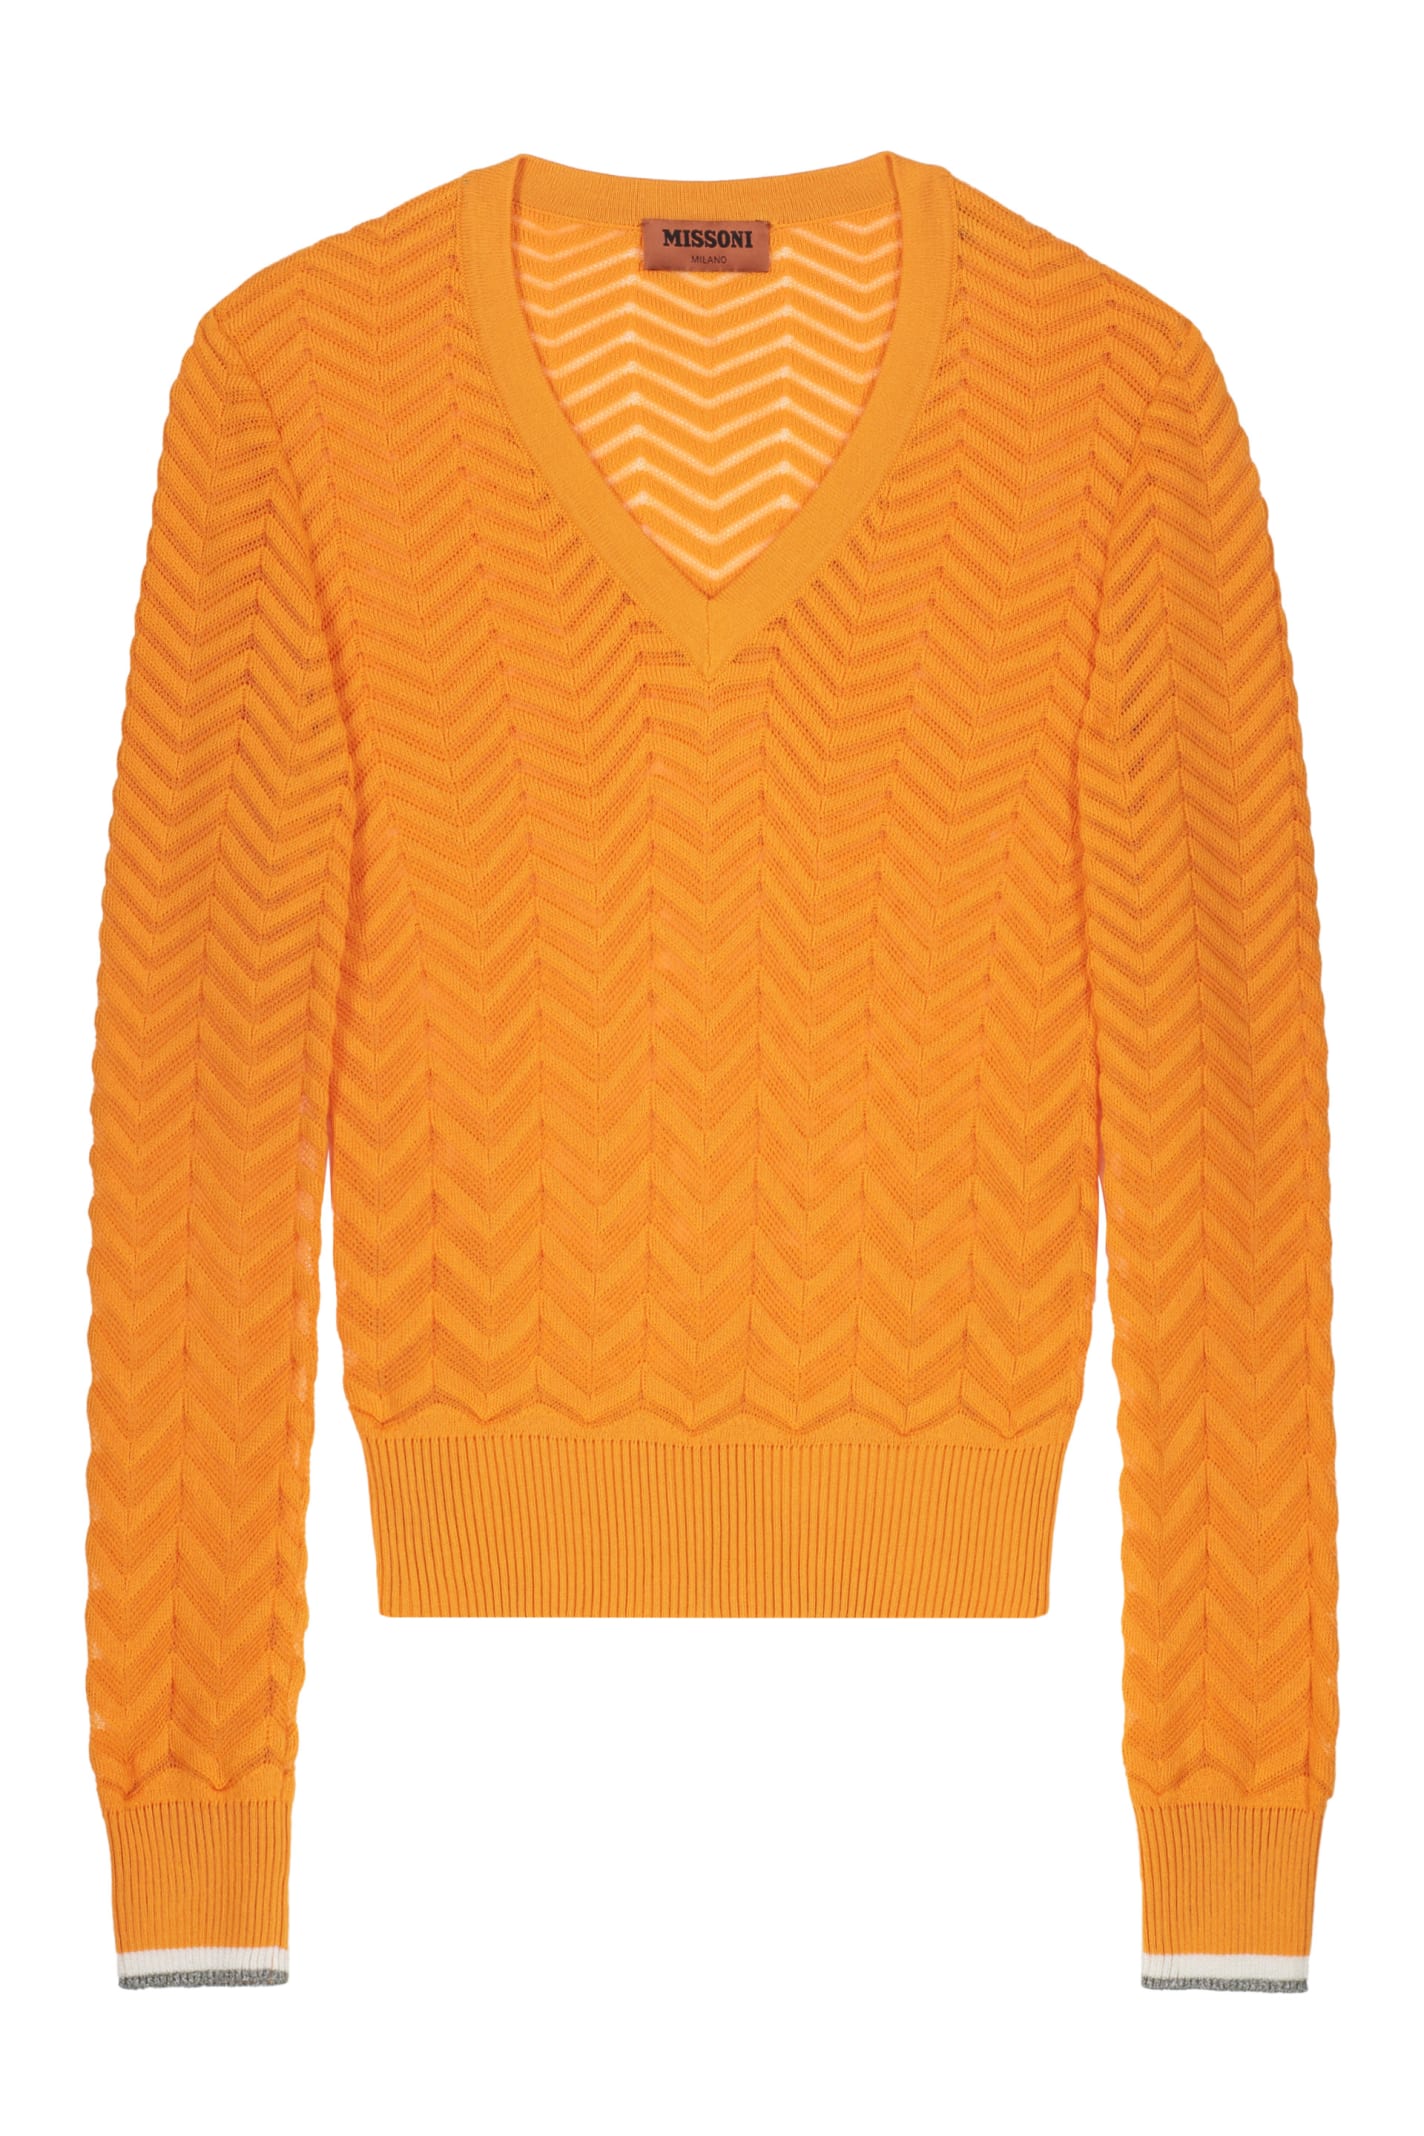 Missoni Cotton V-neck Sweater In Orange